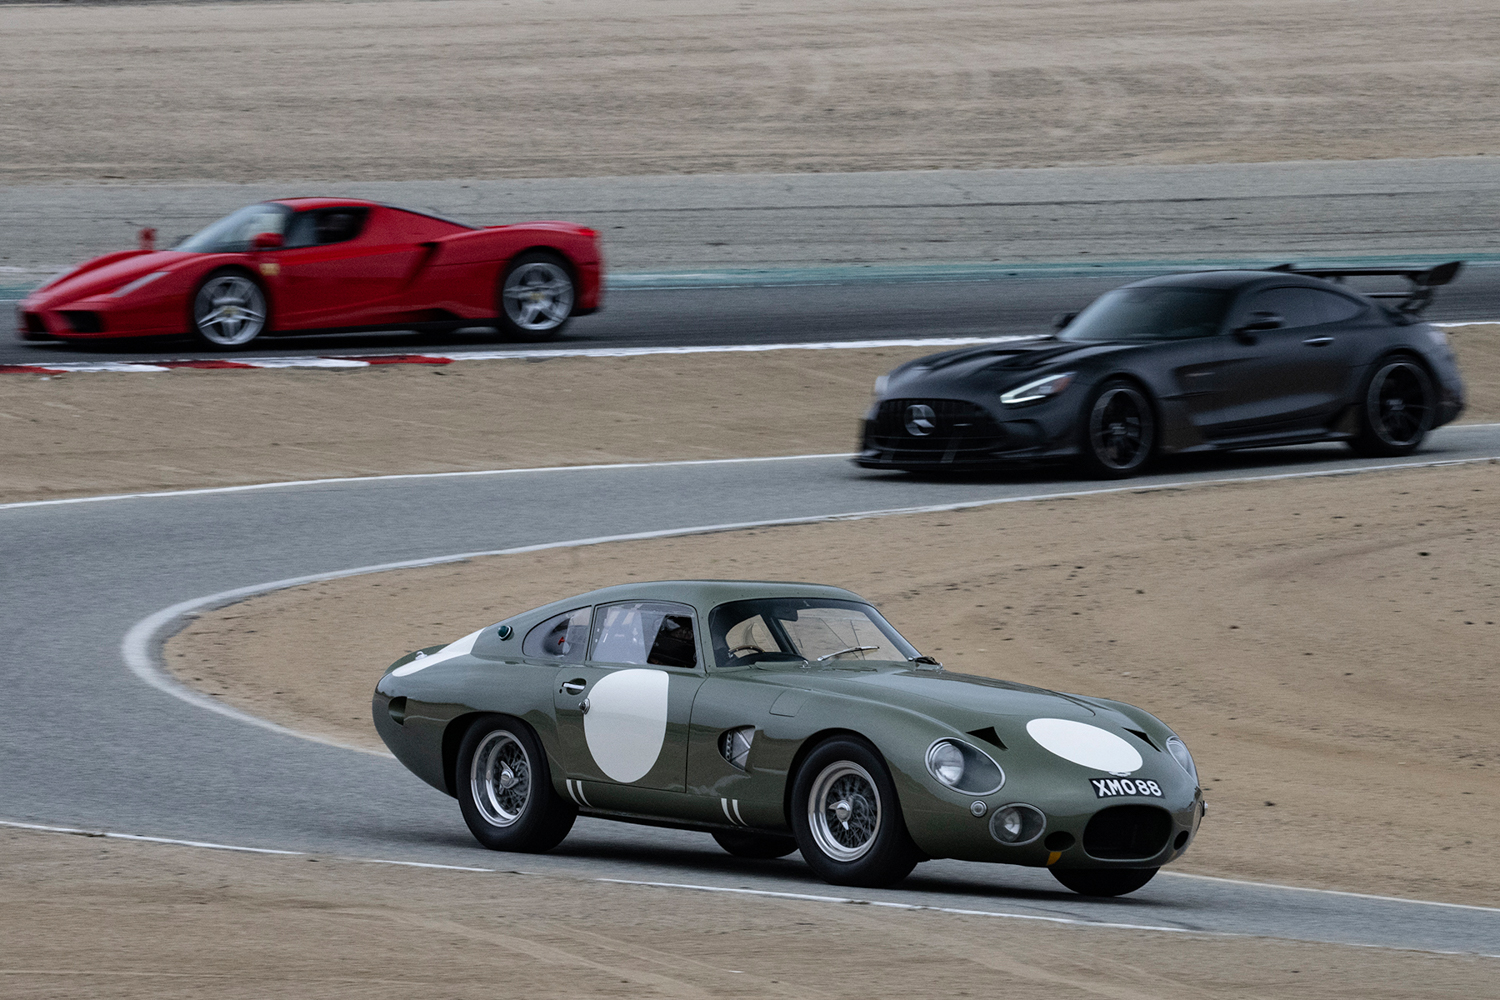 Demo runs by Aston Martin, Mercedes Benz and Ferrari. Dennis Gray